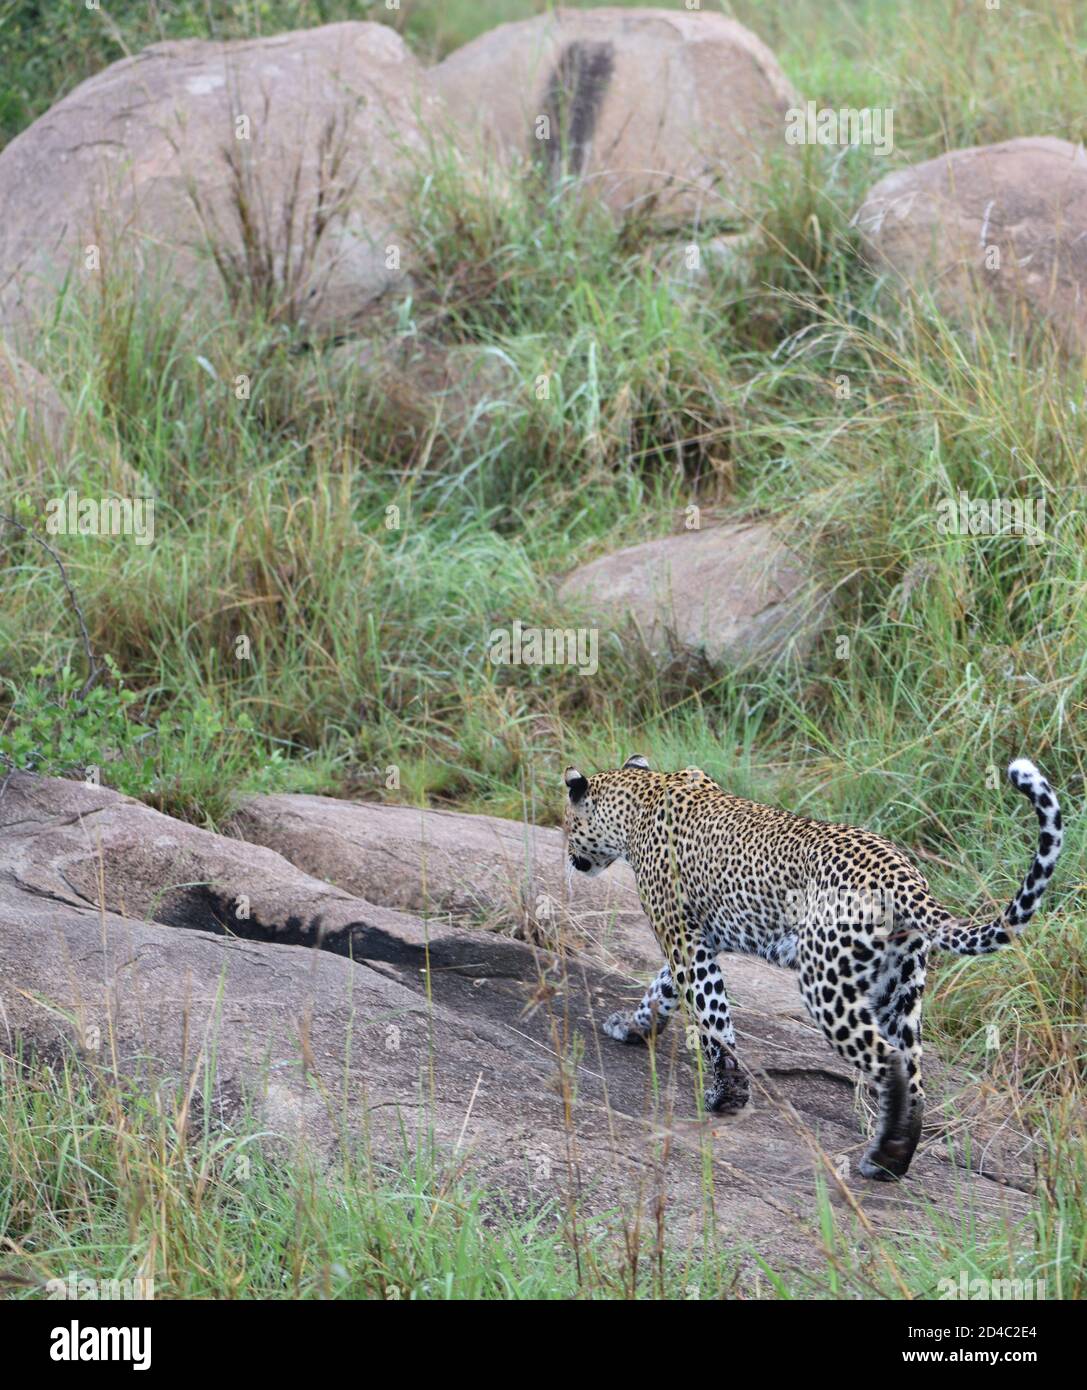 Une femelle léopard (Panthera pardus) s'approche de son den wher deux très jeunes petits sont en sécurité sous les rochers. Parc national du Serengeti, Tanzanie. Banque D'Images